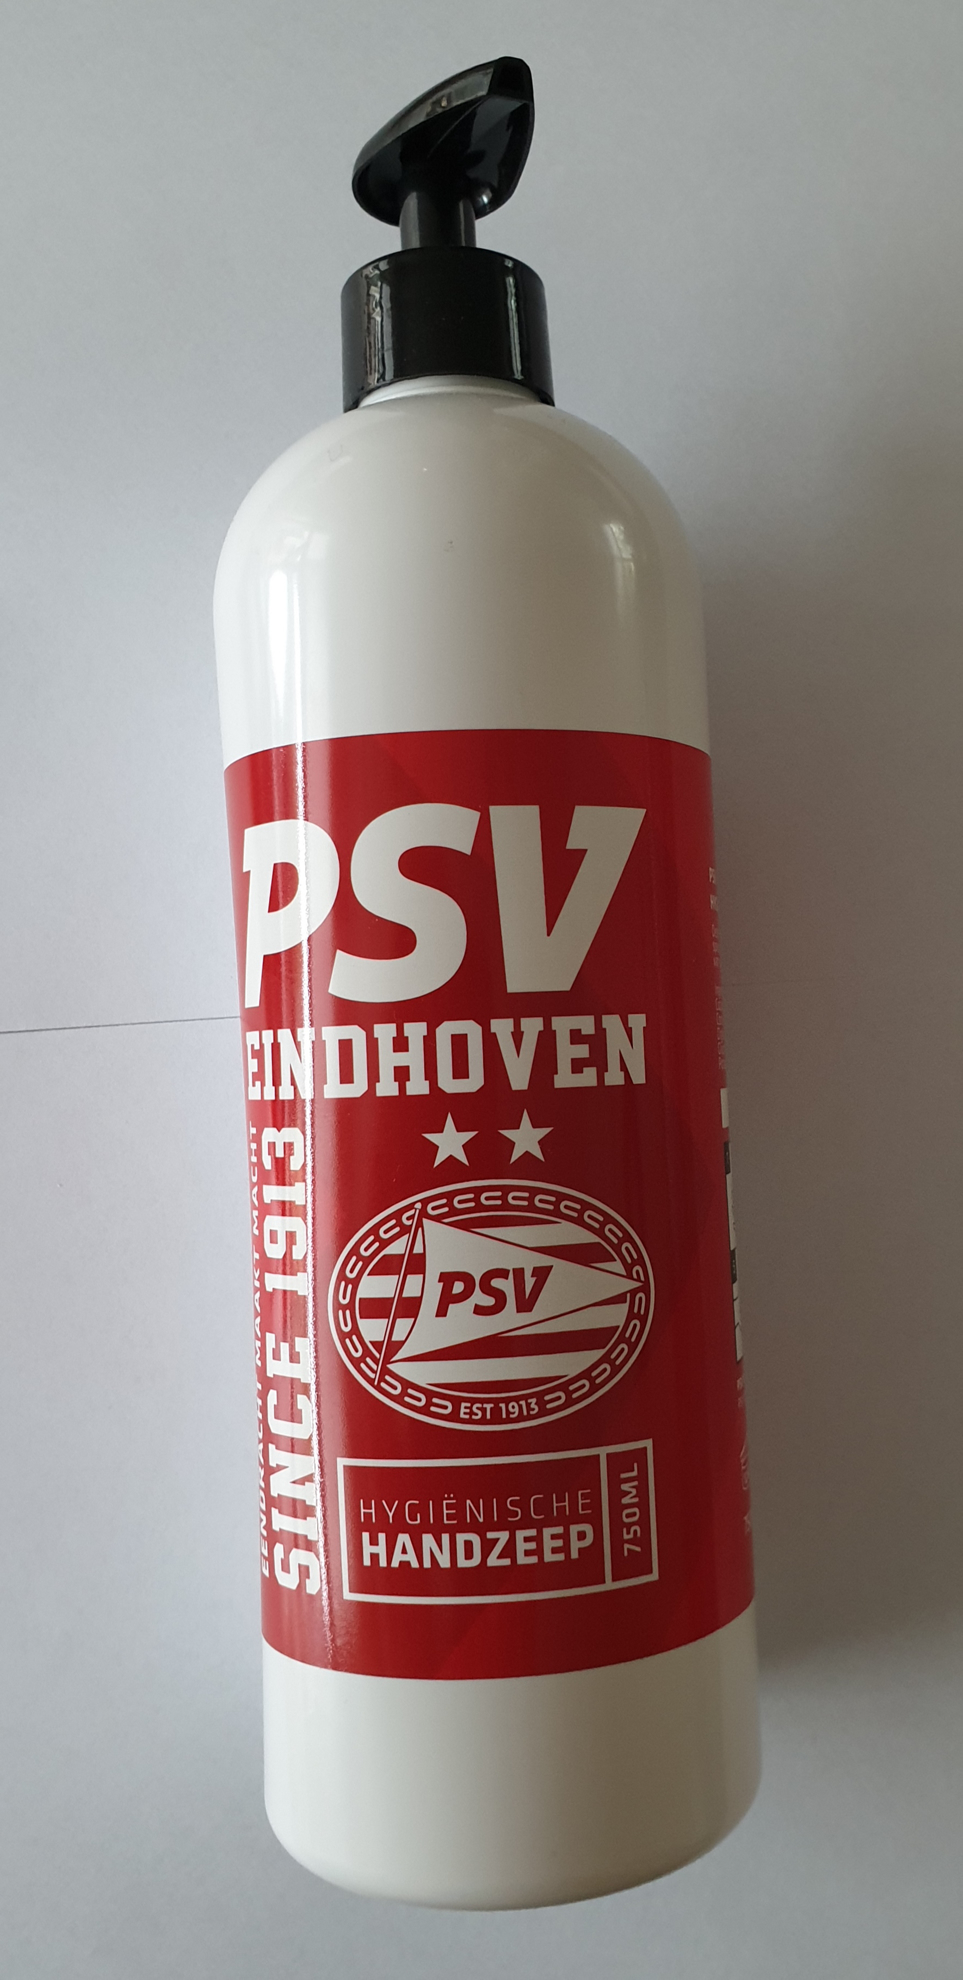 Afbeeldingen van PSV Hygiënische Handzeep met Pomp